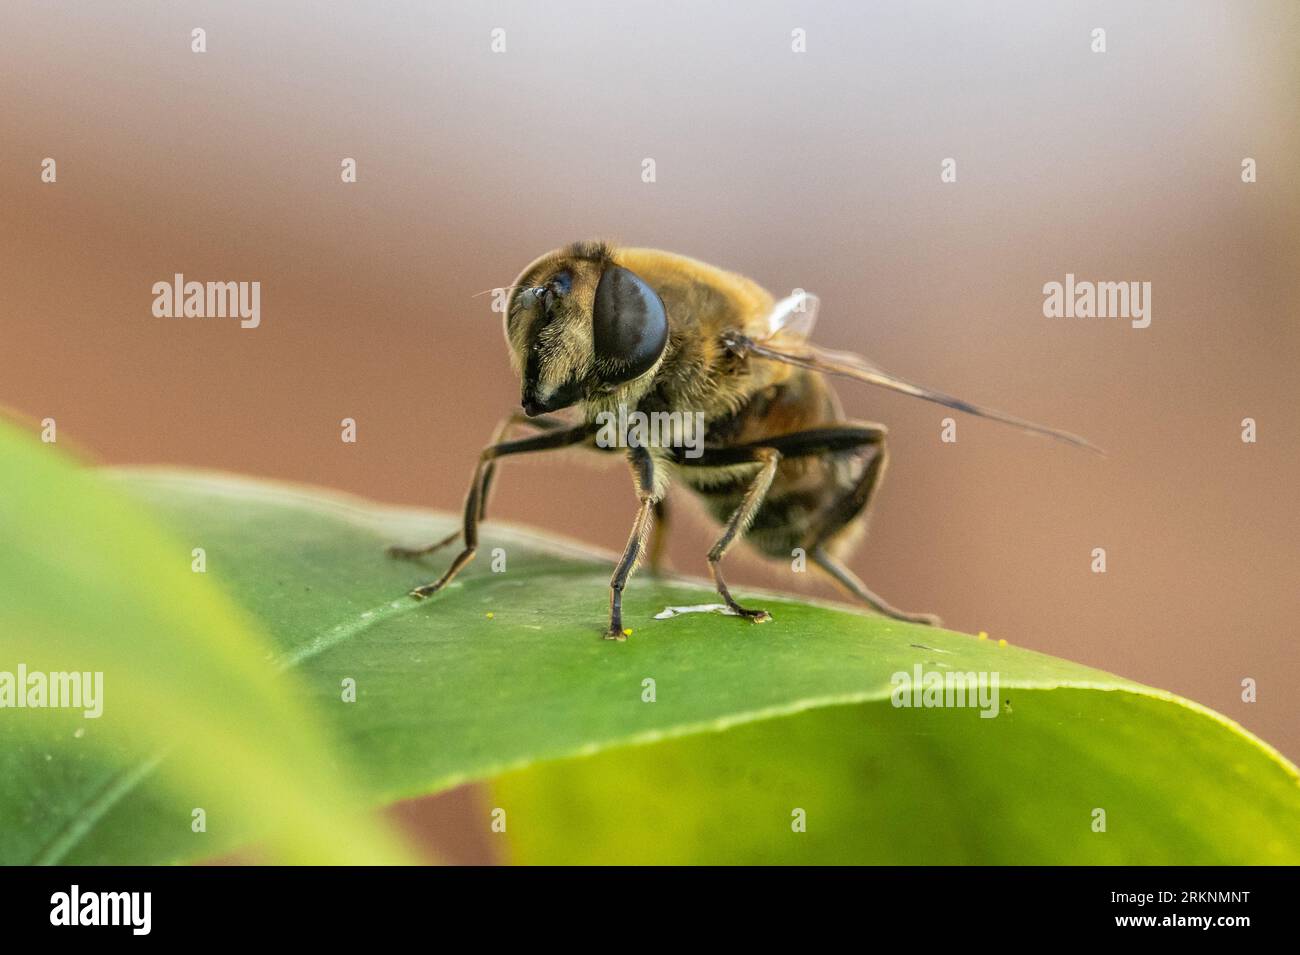 Aéroglisseurs, aéroglisseurs, syrphides, mouches florales (Syrphidae), assis sur une feuille, Allemagne, Bavière Banque D'Images